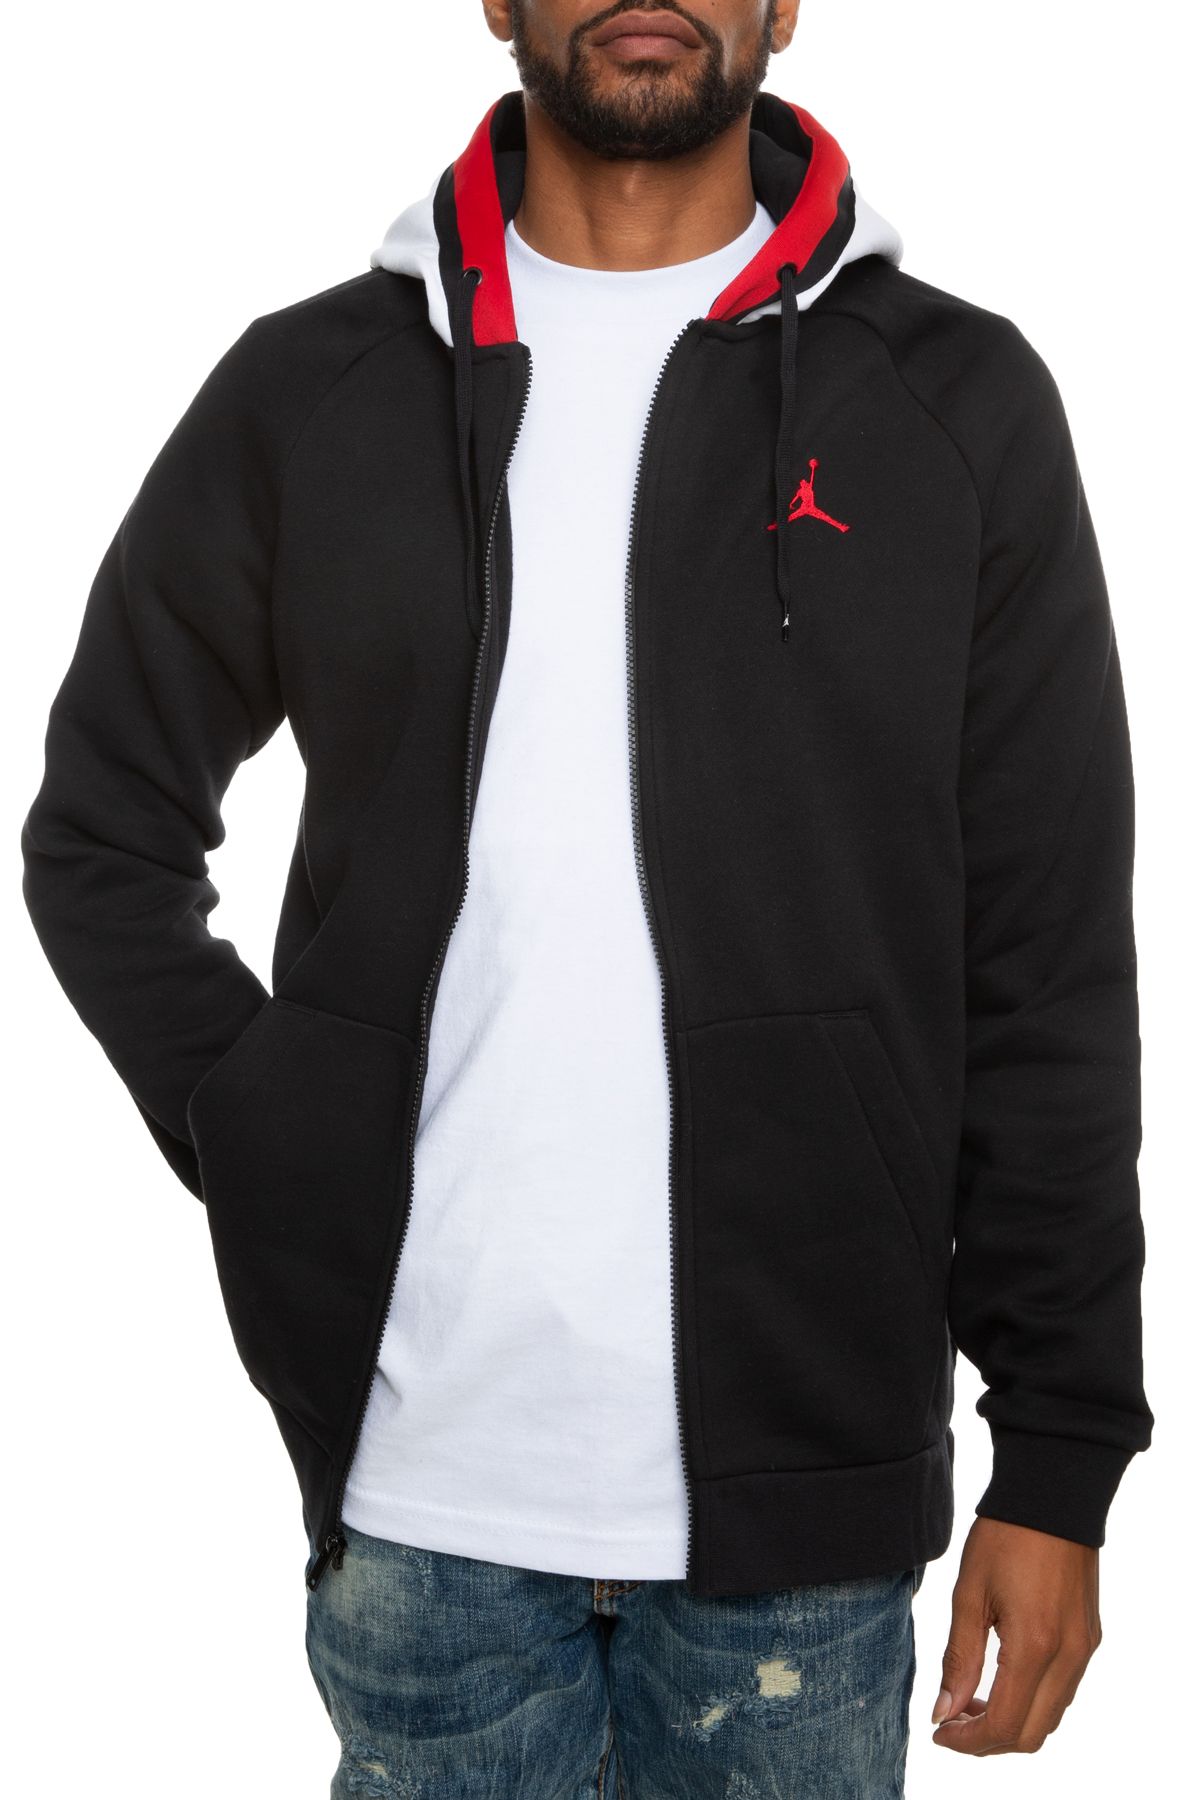 black red and white jordan hoodie